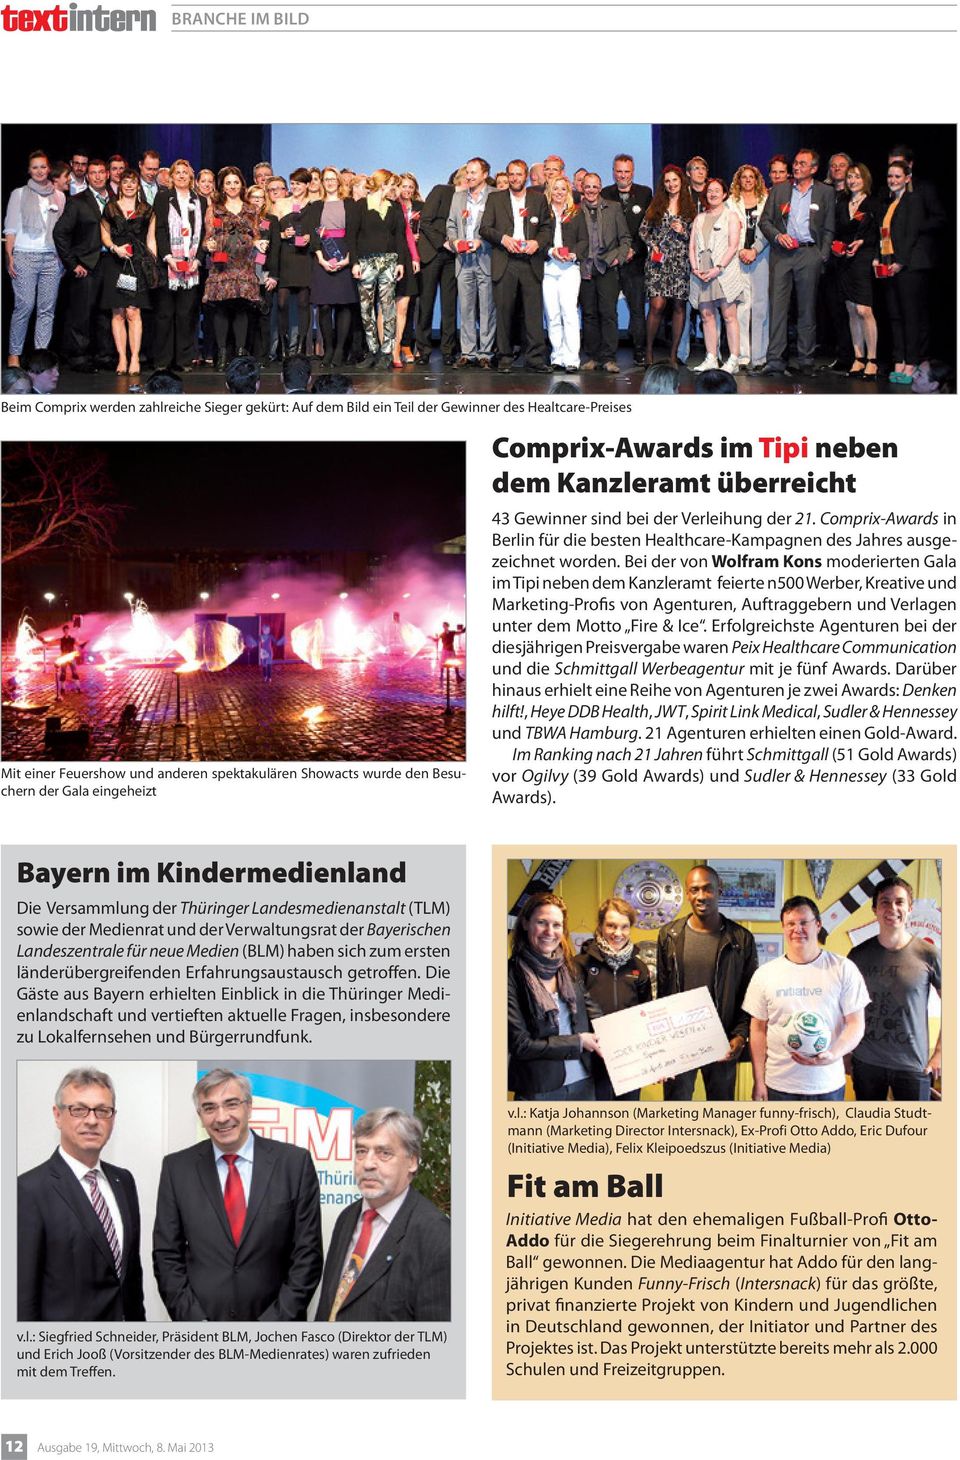 Comprix-Awards in Berlin für die besten Healthcare-Kampagnen des Jahres ausgezeichnet worden.